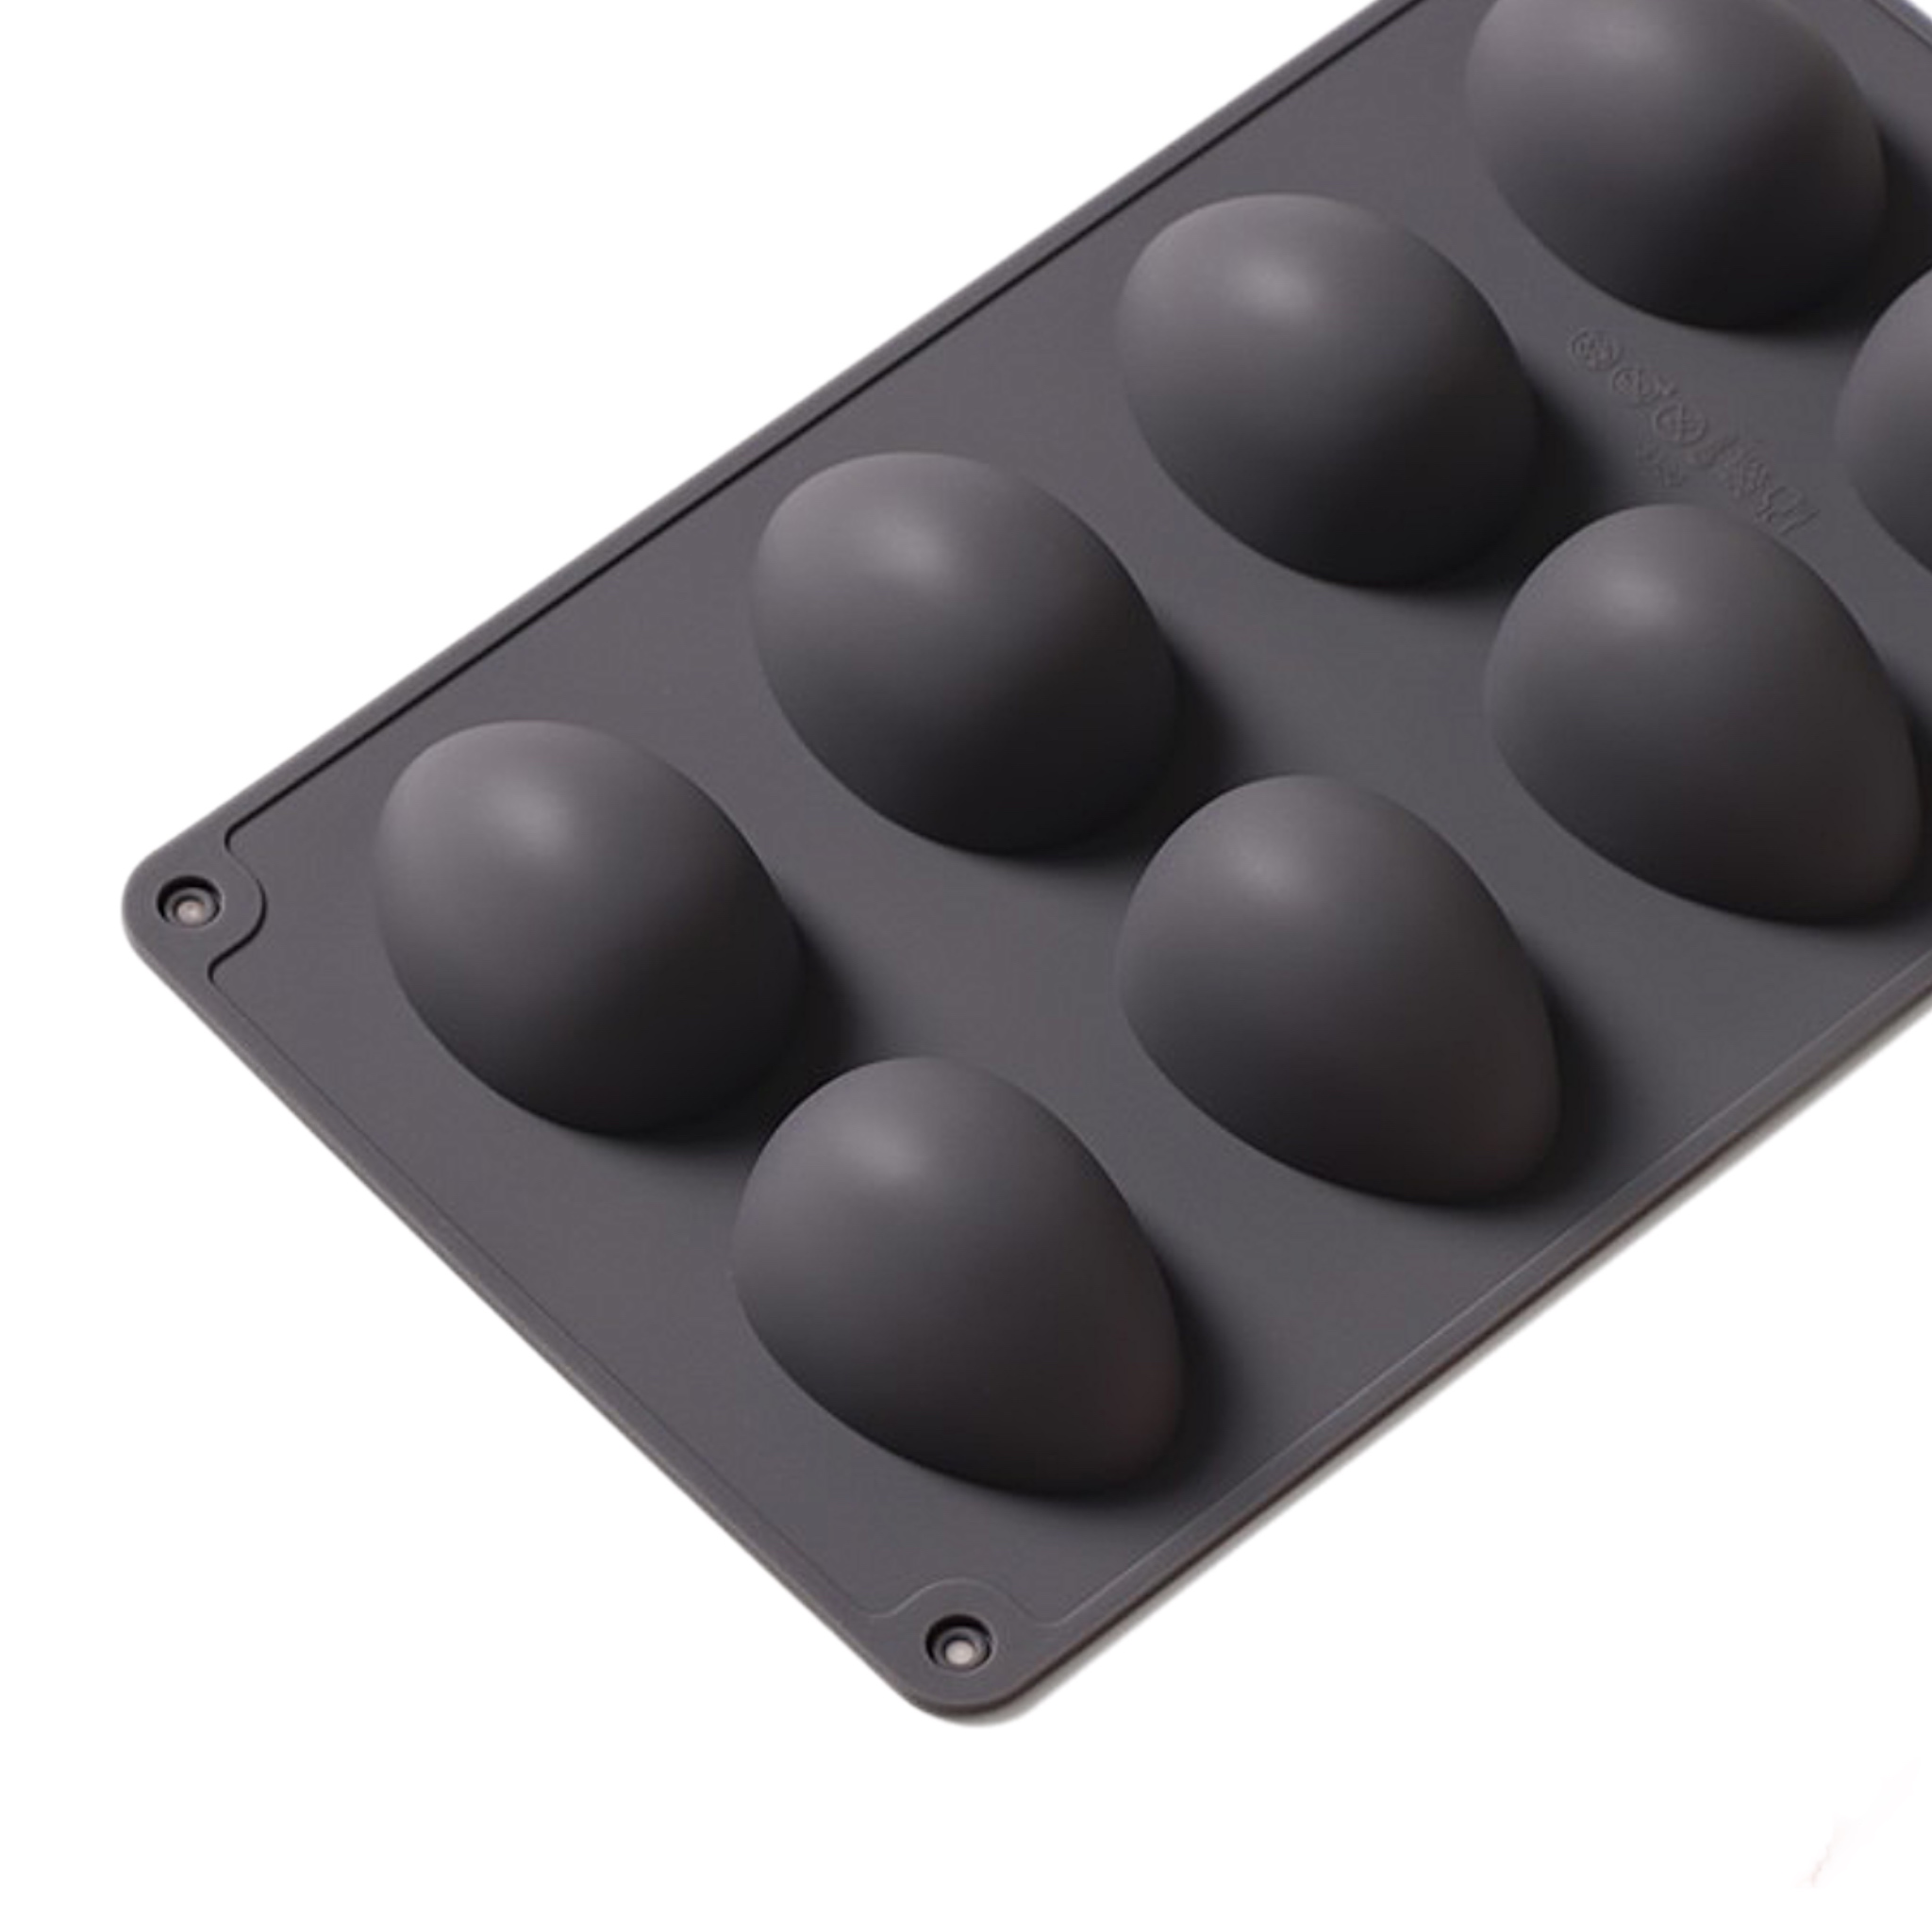 Купить форму для яиц. Форма силиконовая для кондитерских прямоугольная 9 ячеек. Шоколад в форме угля. Форма для шоколада балет.